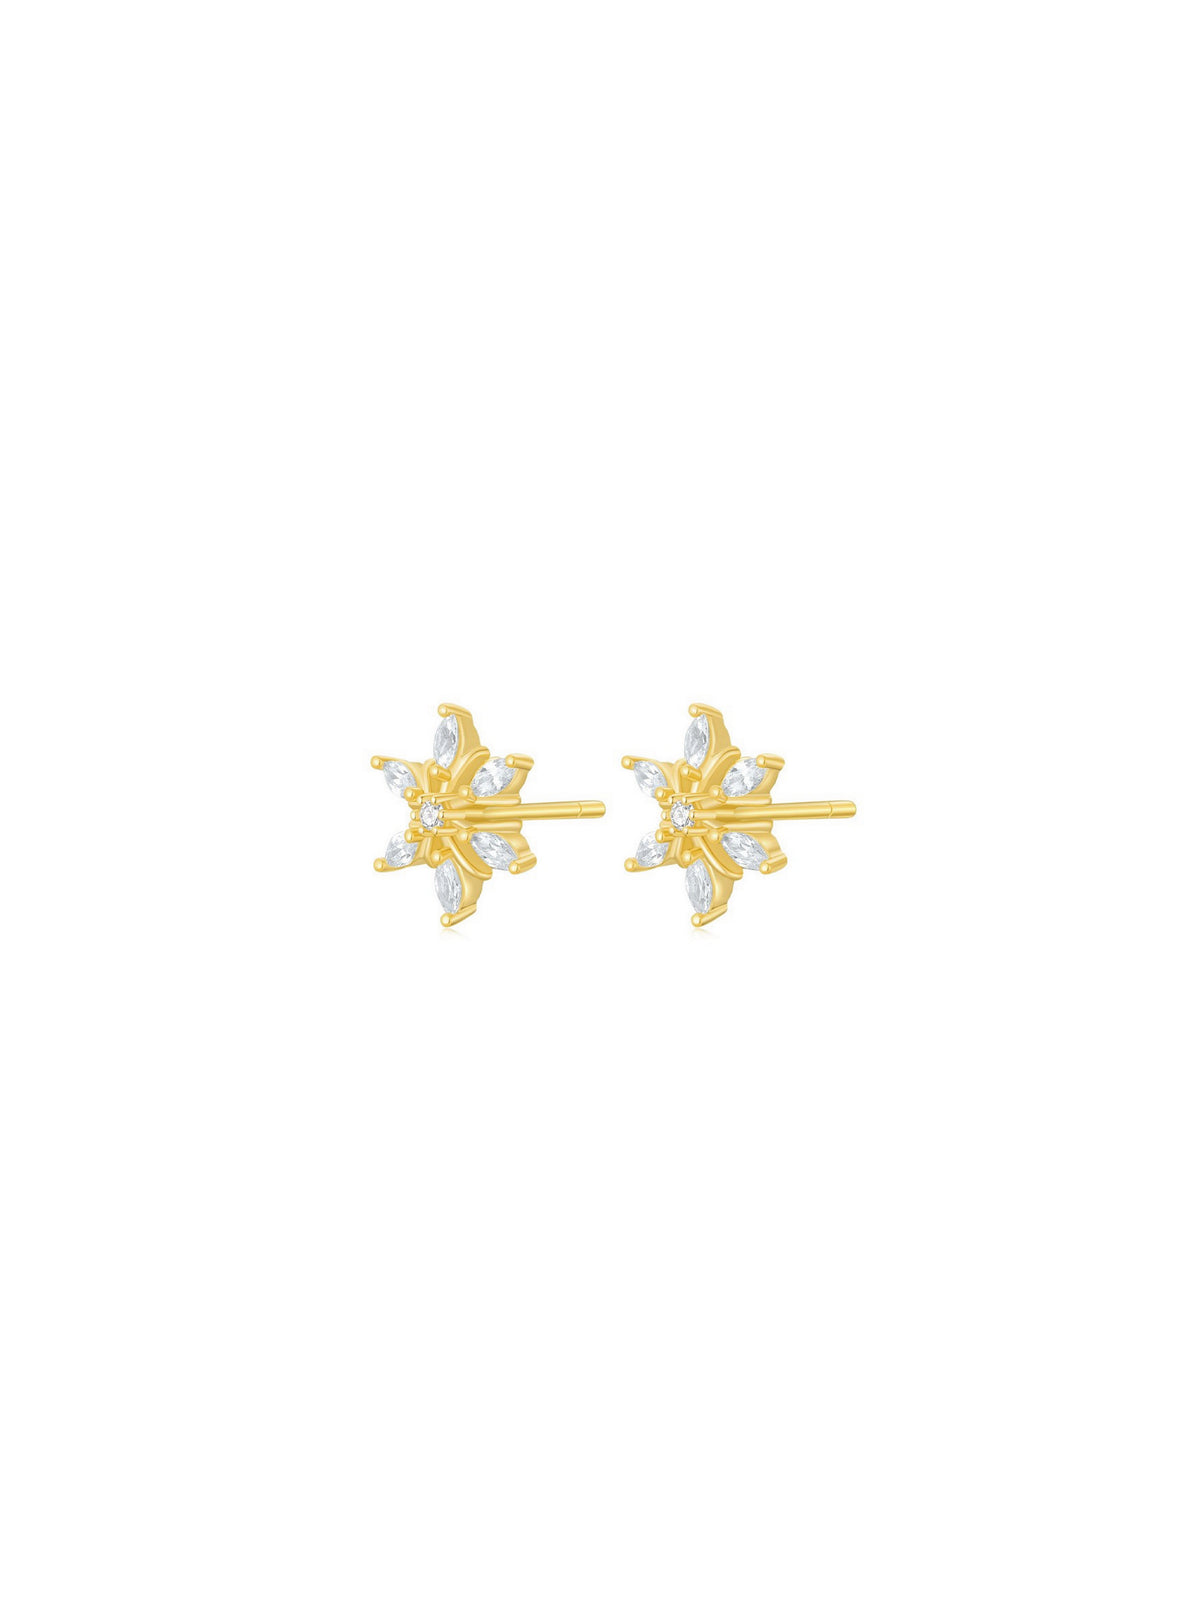 Snowflake Earrings (Pair)